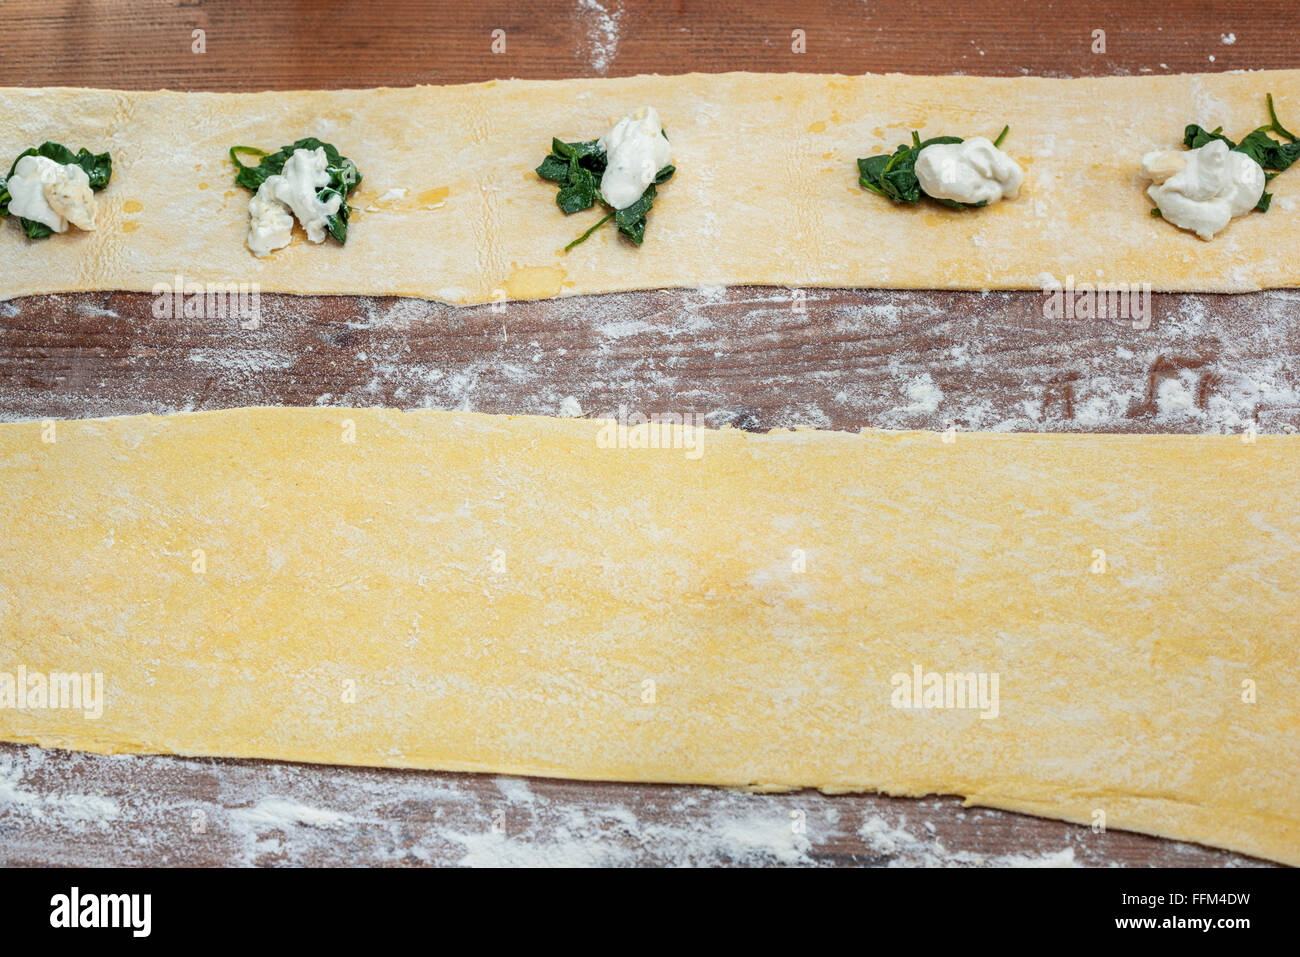 Hand-Küche-Spinat-Ricotta-Cotta Teig Stempel Ravioli Stempel Käse Frischkäse Eier von Oliv schneiden Ravioli Pasta von hand gefertigt Stockfoto